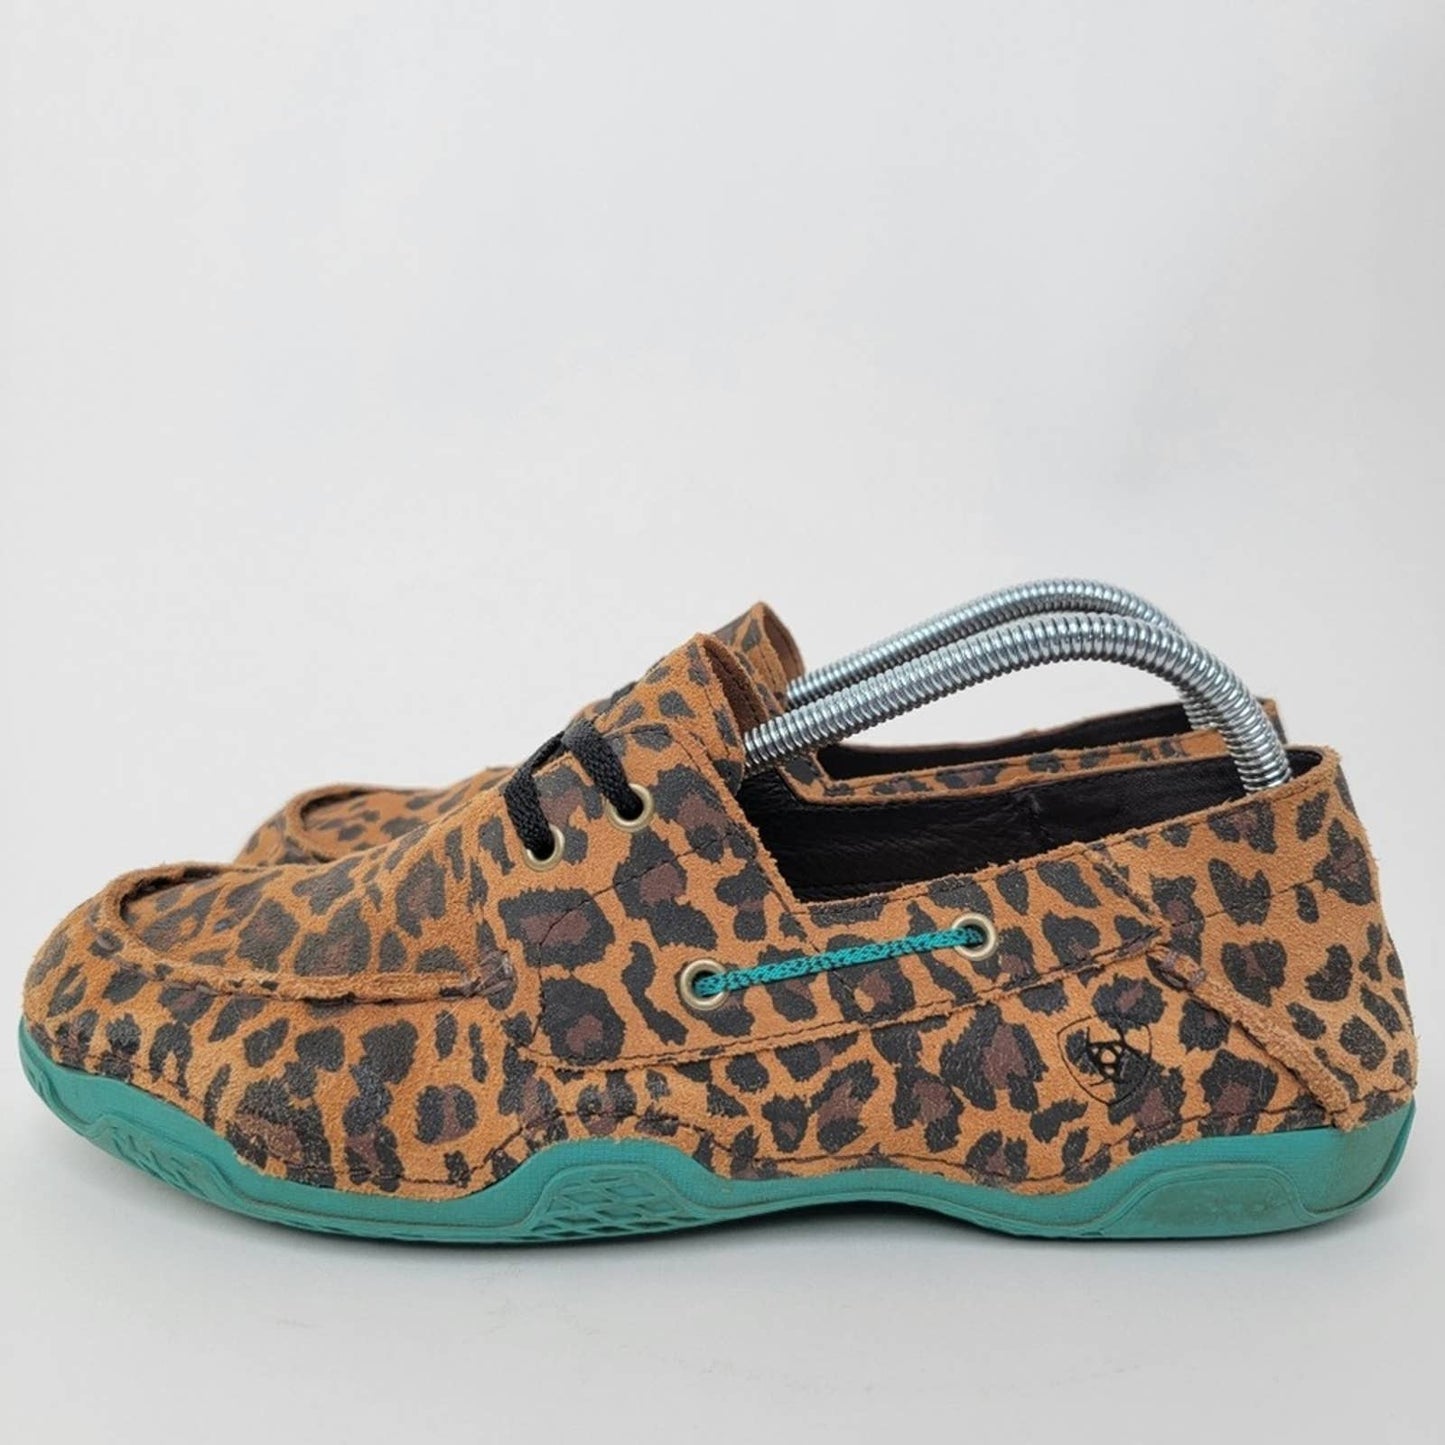 Ariat Caldwell Leopard / Cheetah Animal Print Shoes - 10